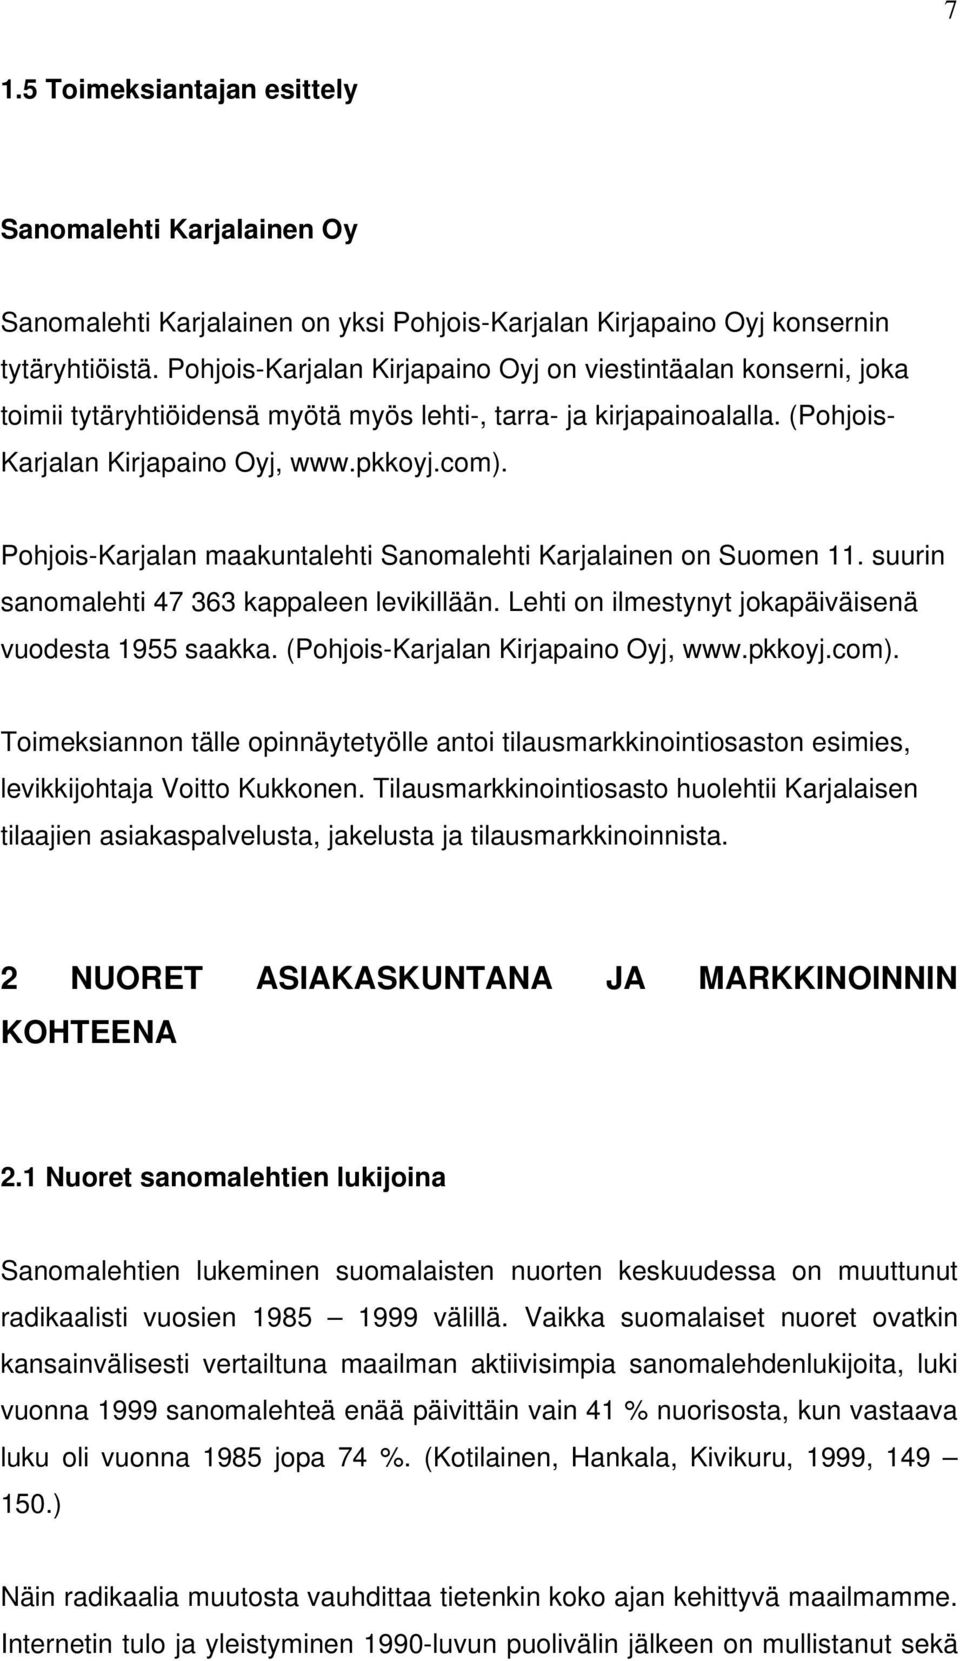 Pohjois-Karjalan maakuntalehti Sanomalehti Karjalainen on Suomen 11. suurin sanomalehti 47 363 kappaleen levikillään. Lehti on ilmestynyt jokapäiväisenä vuodesta 1955 saakka.